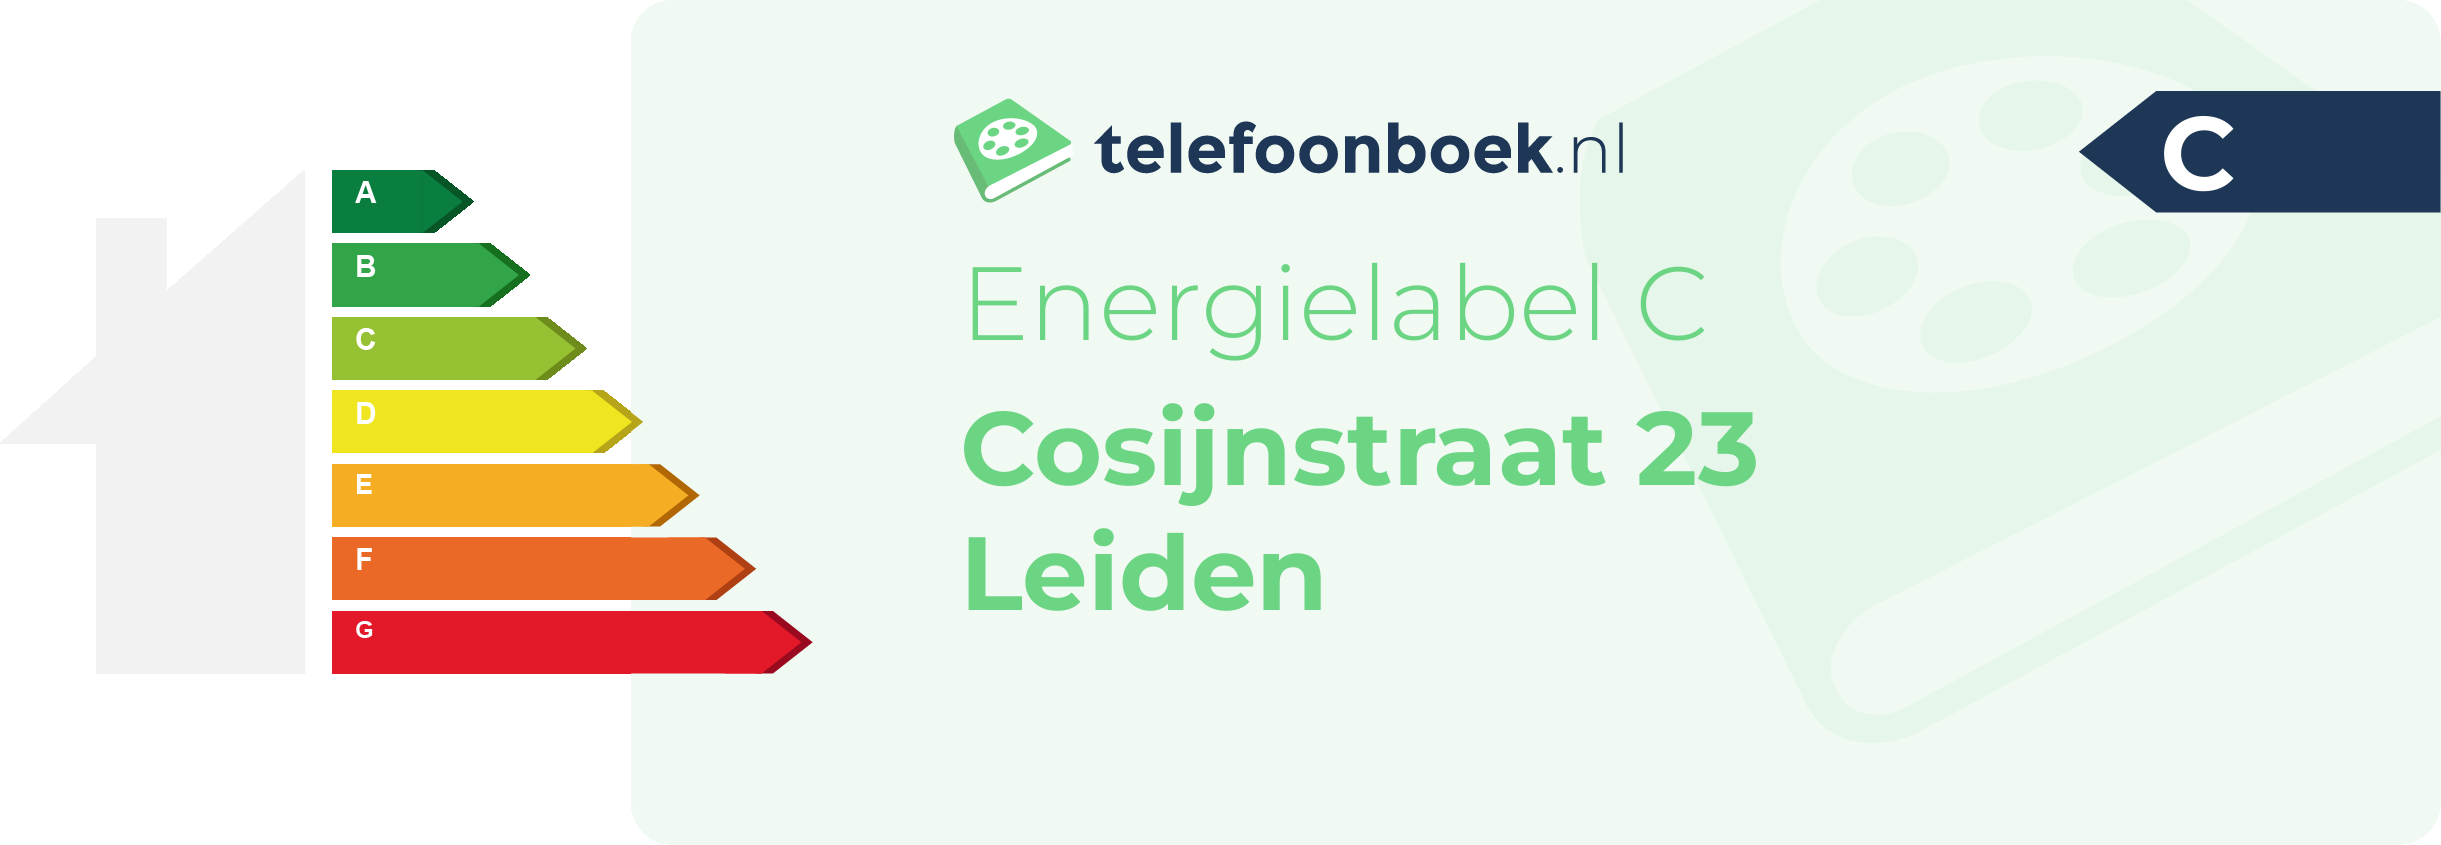 Energielabel Cosijnstraat 23 Leiden